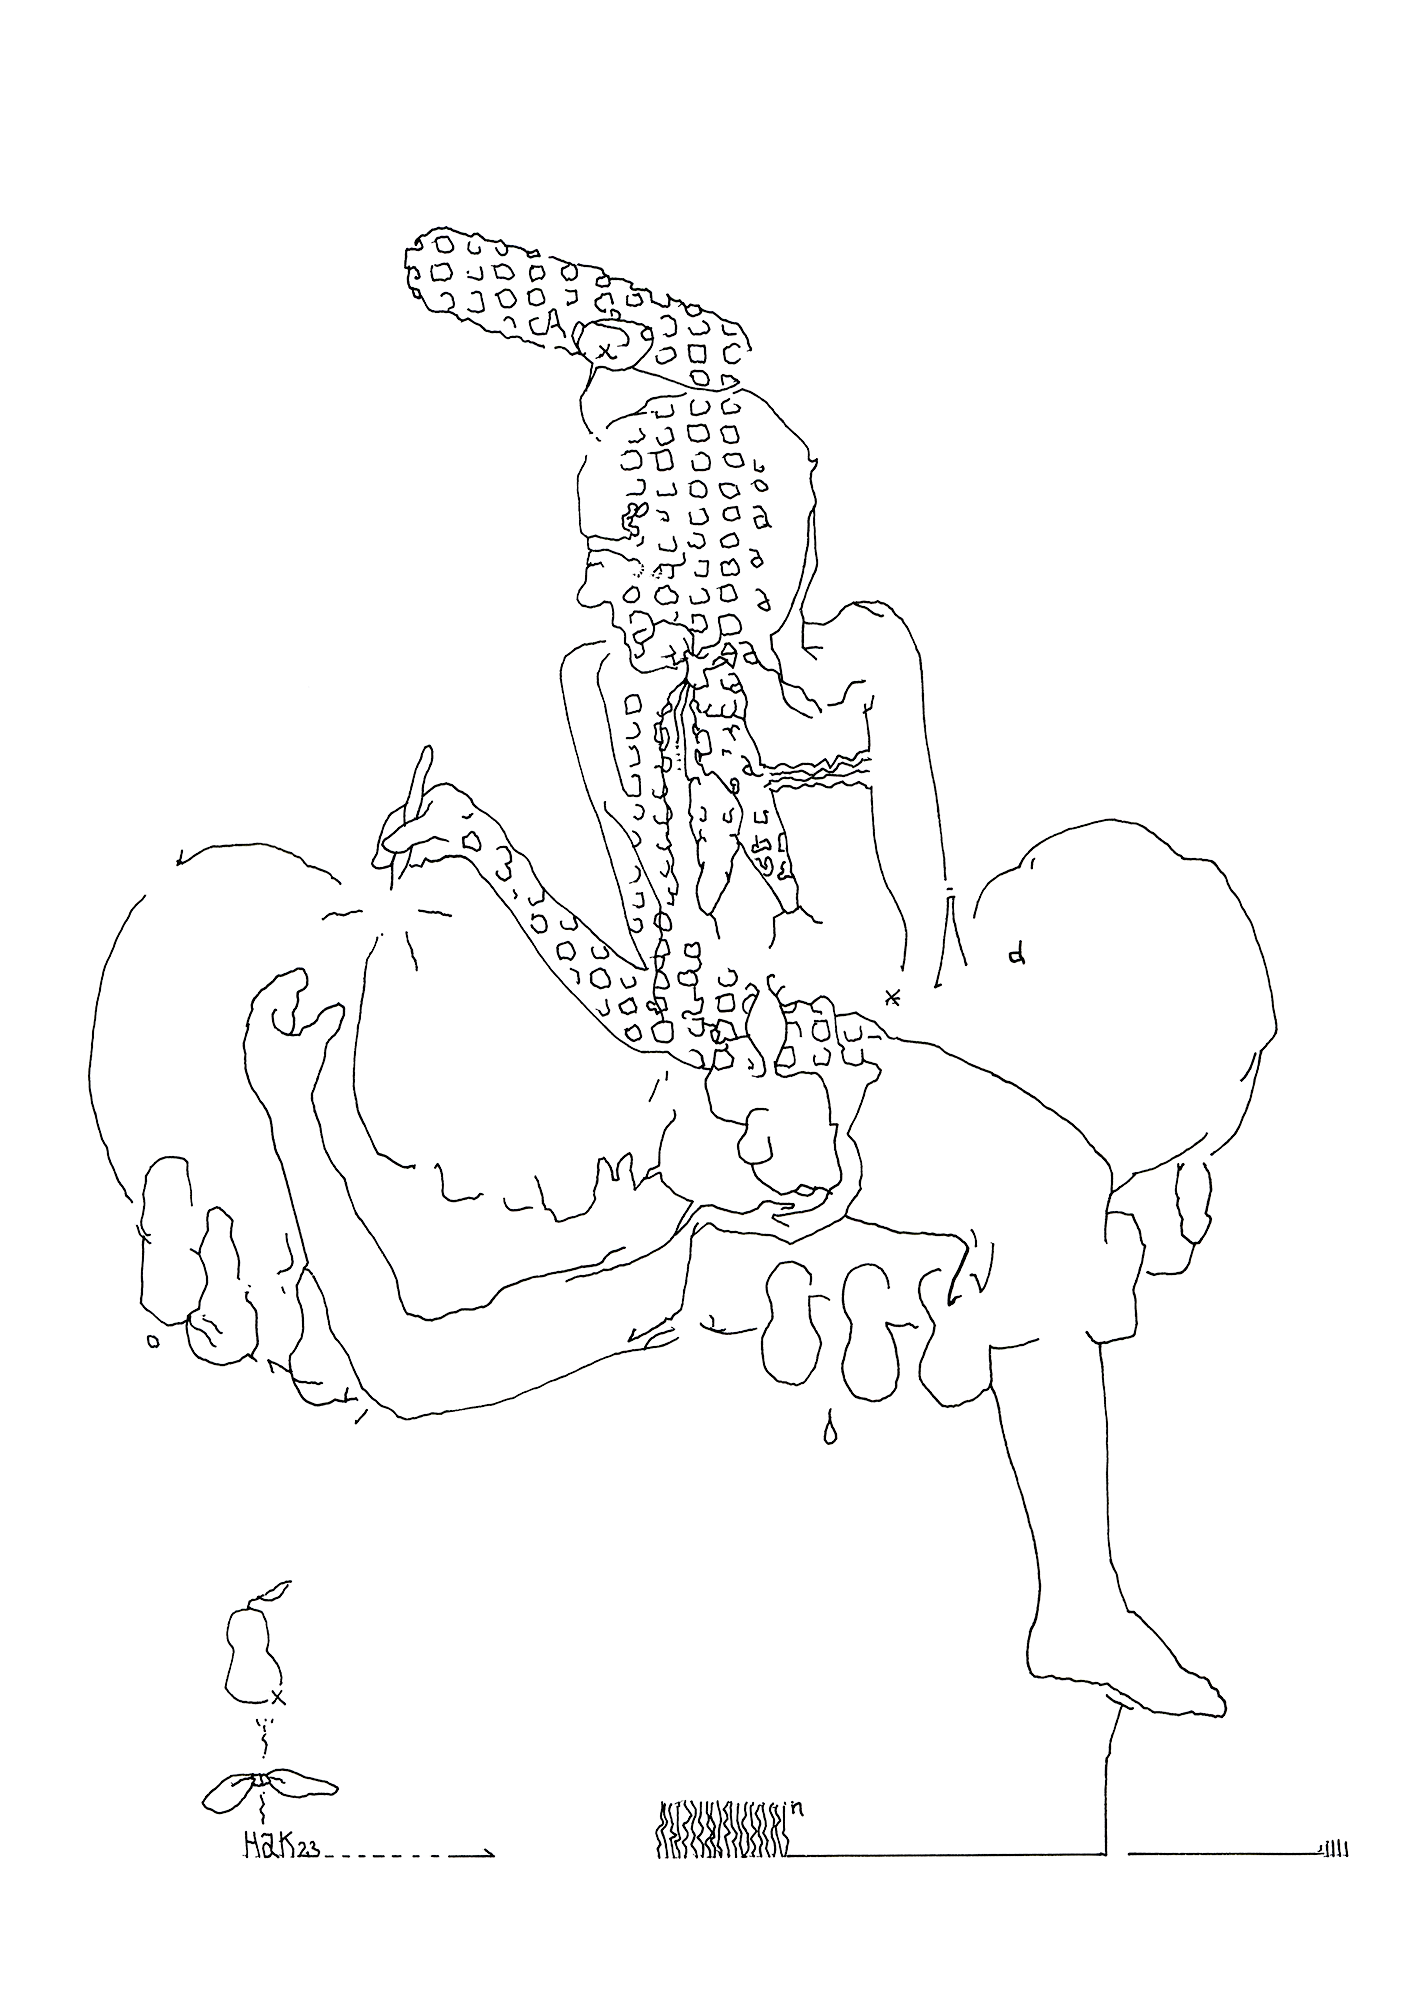 Hannes Kater: Tageszeichnung (Zeichnung/drawing) vom 17.02.2023 (1414 x 2000 Pixel)